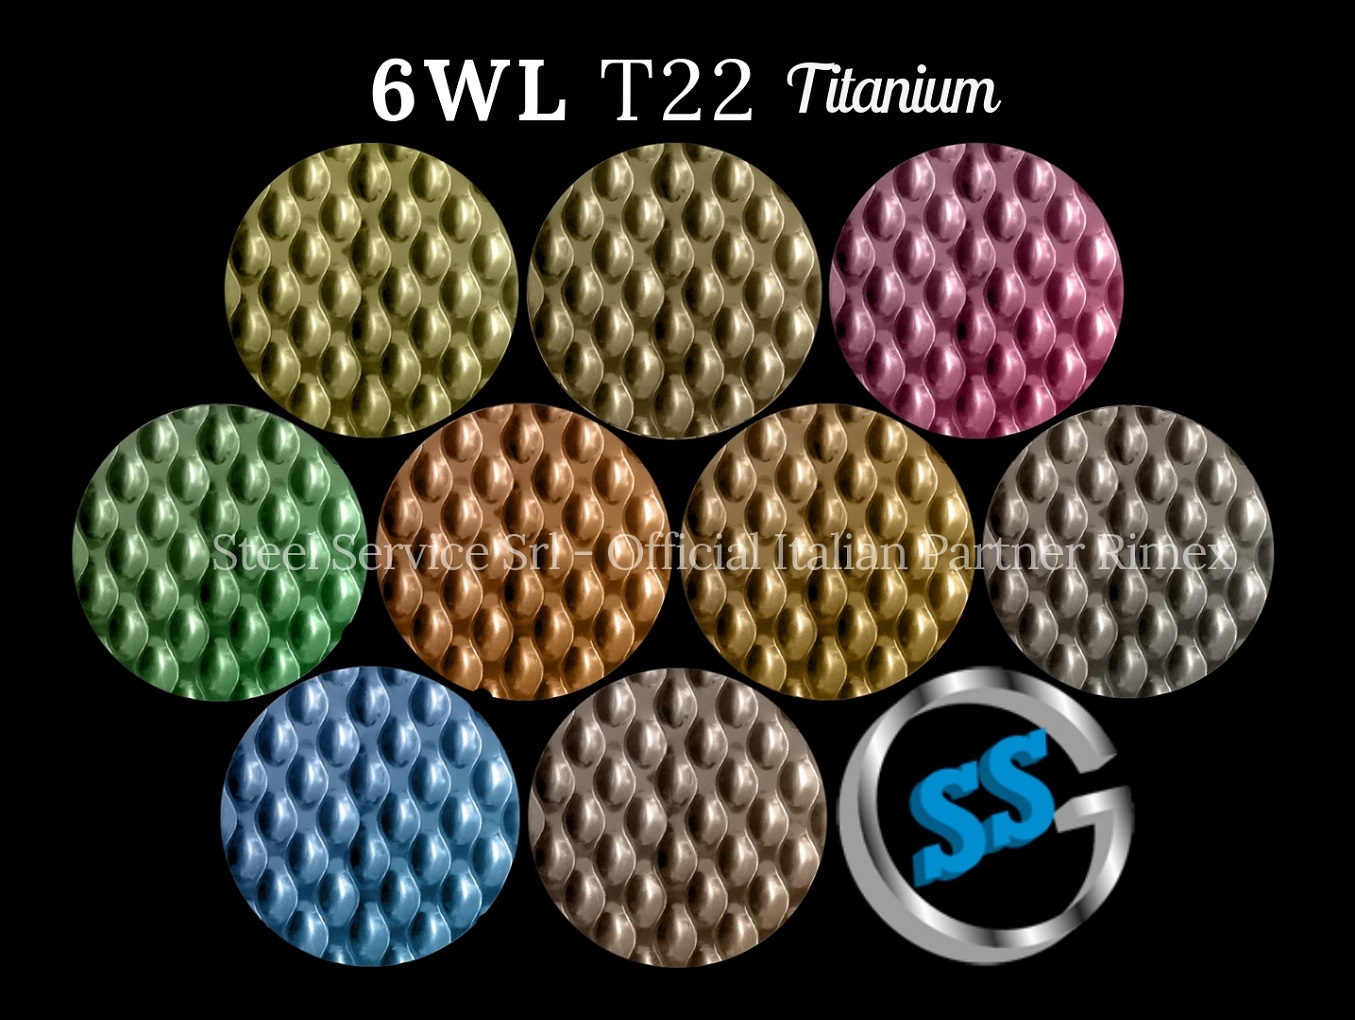 Lamiere bugnate 6WL colorate, Palette varianti colorate inox T22 Titanium delle lamiere inox 6WL, inox rigidizzato 6WL